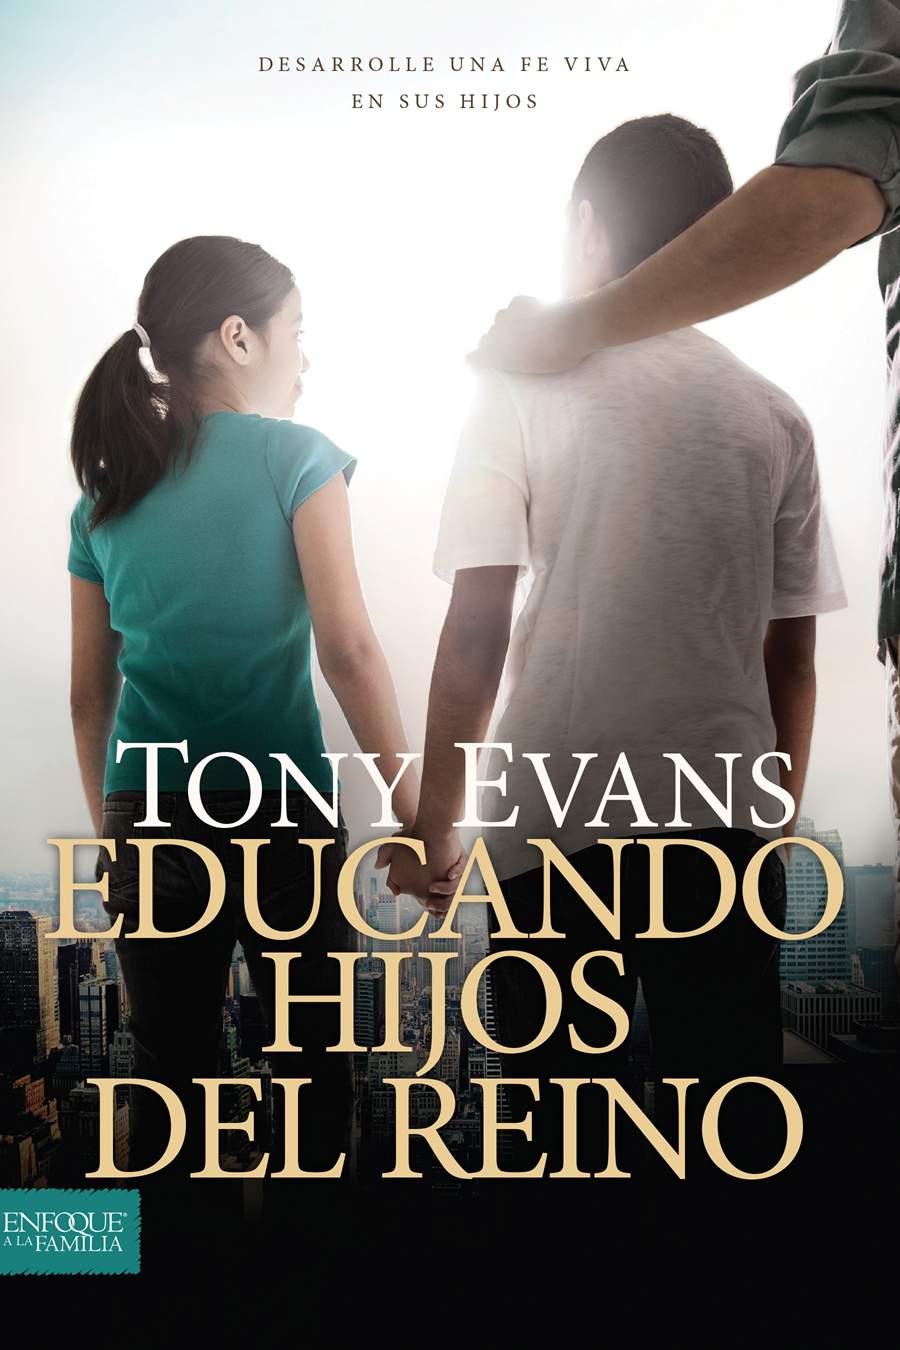 Educando hijos del reino - Tony Evans